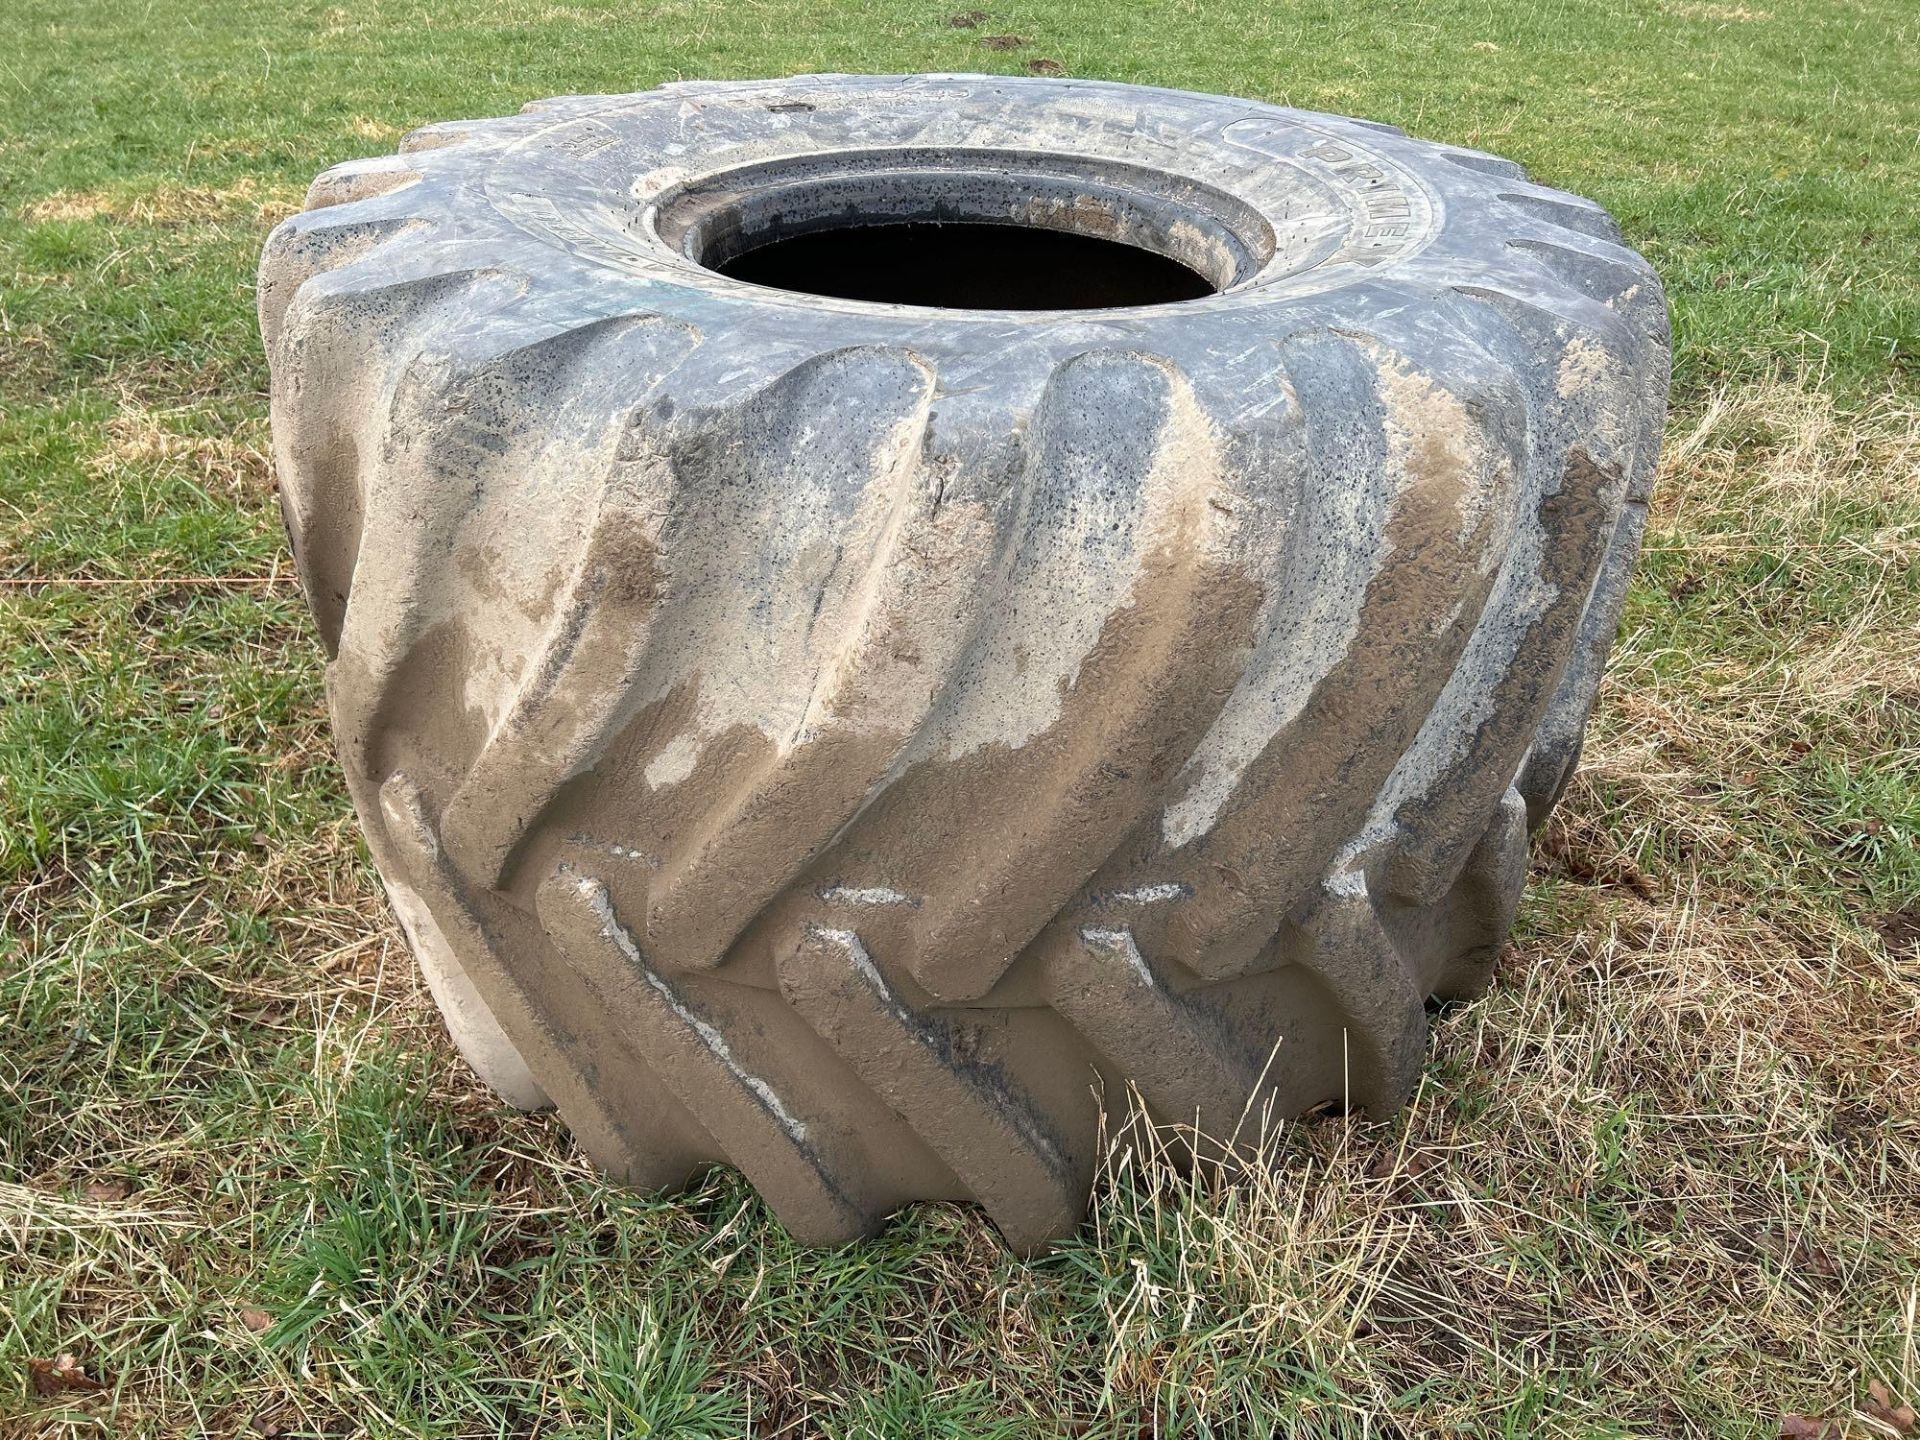 1 x Primex 66x43.00x25 tyre - Image 3 of 3